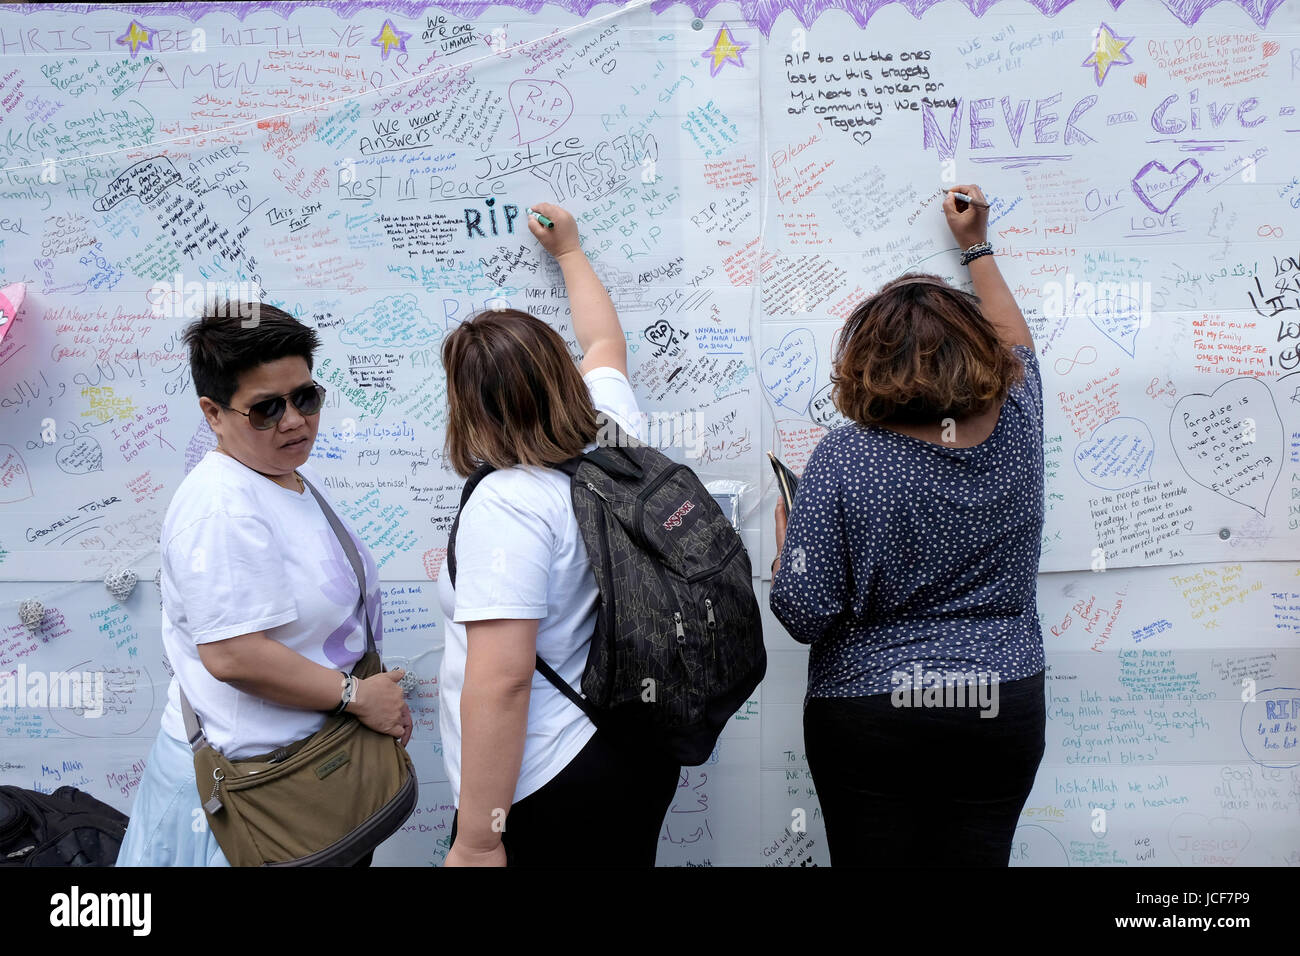 London, UK, 15. Juni 2017. Tribute und Beileidsbekundungen an einer Wand in der Nähe von Grenfell Turm geschrieben. Bildnachweis: Yanice Cesari / Alamy Live News Stockfoto